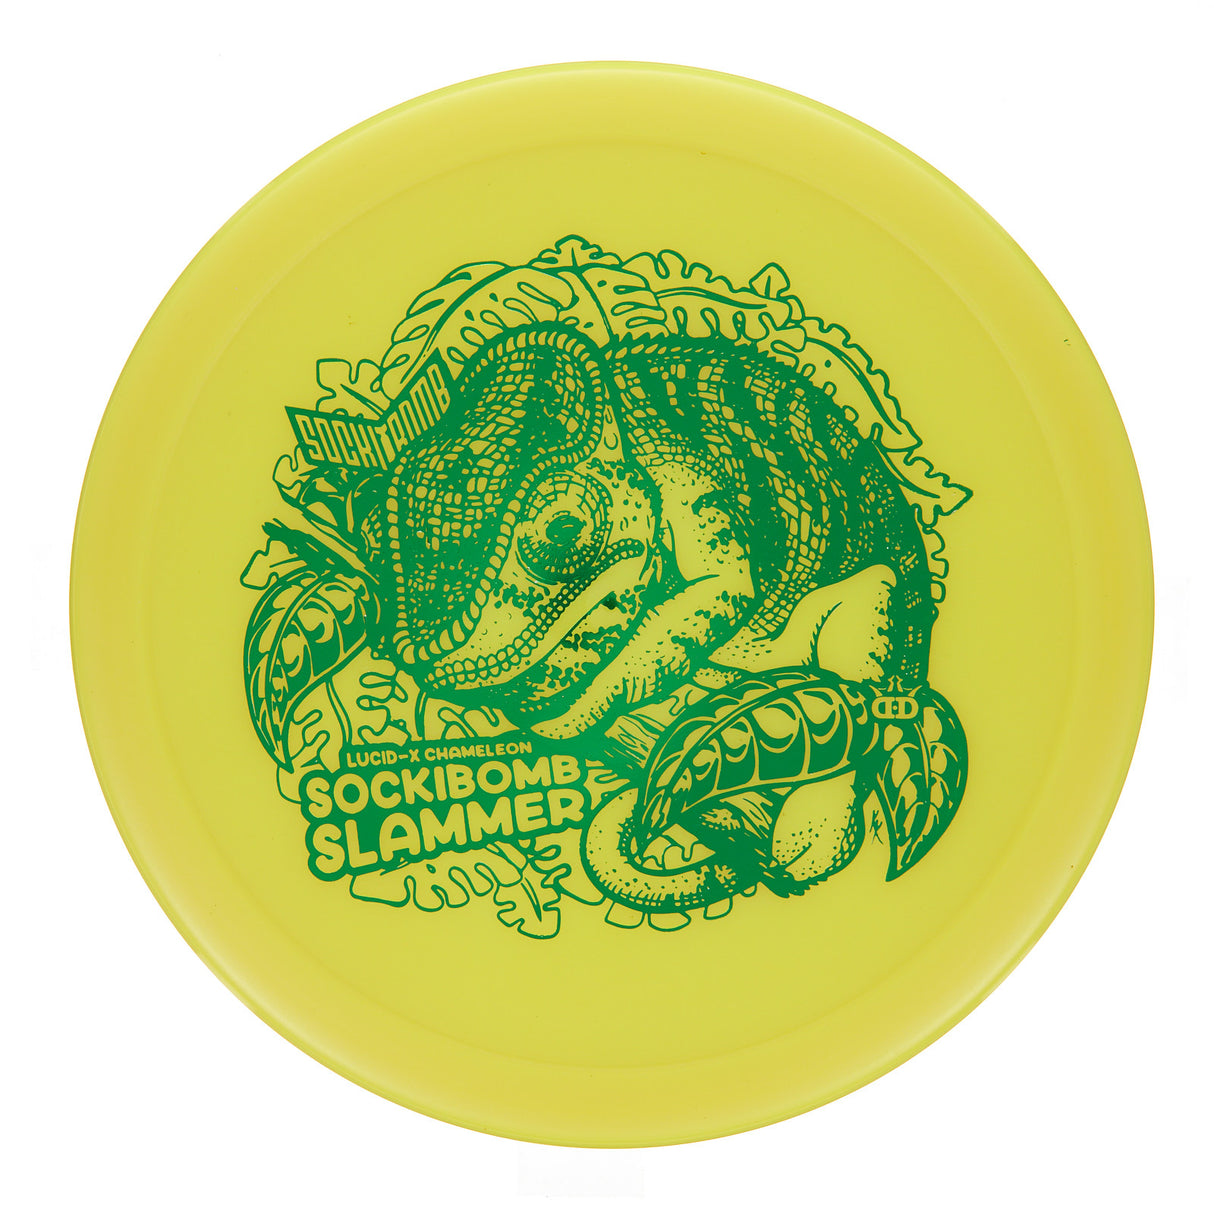 Dynamic Discs Sockibomb Slammer - Lucid-X Chameleon  176g | Style 0001